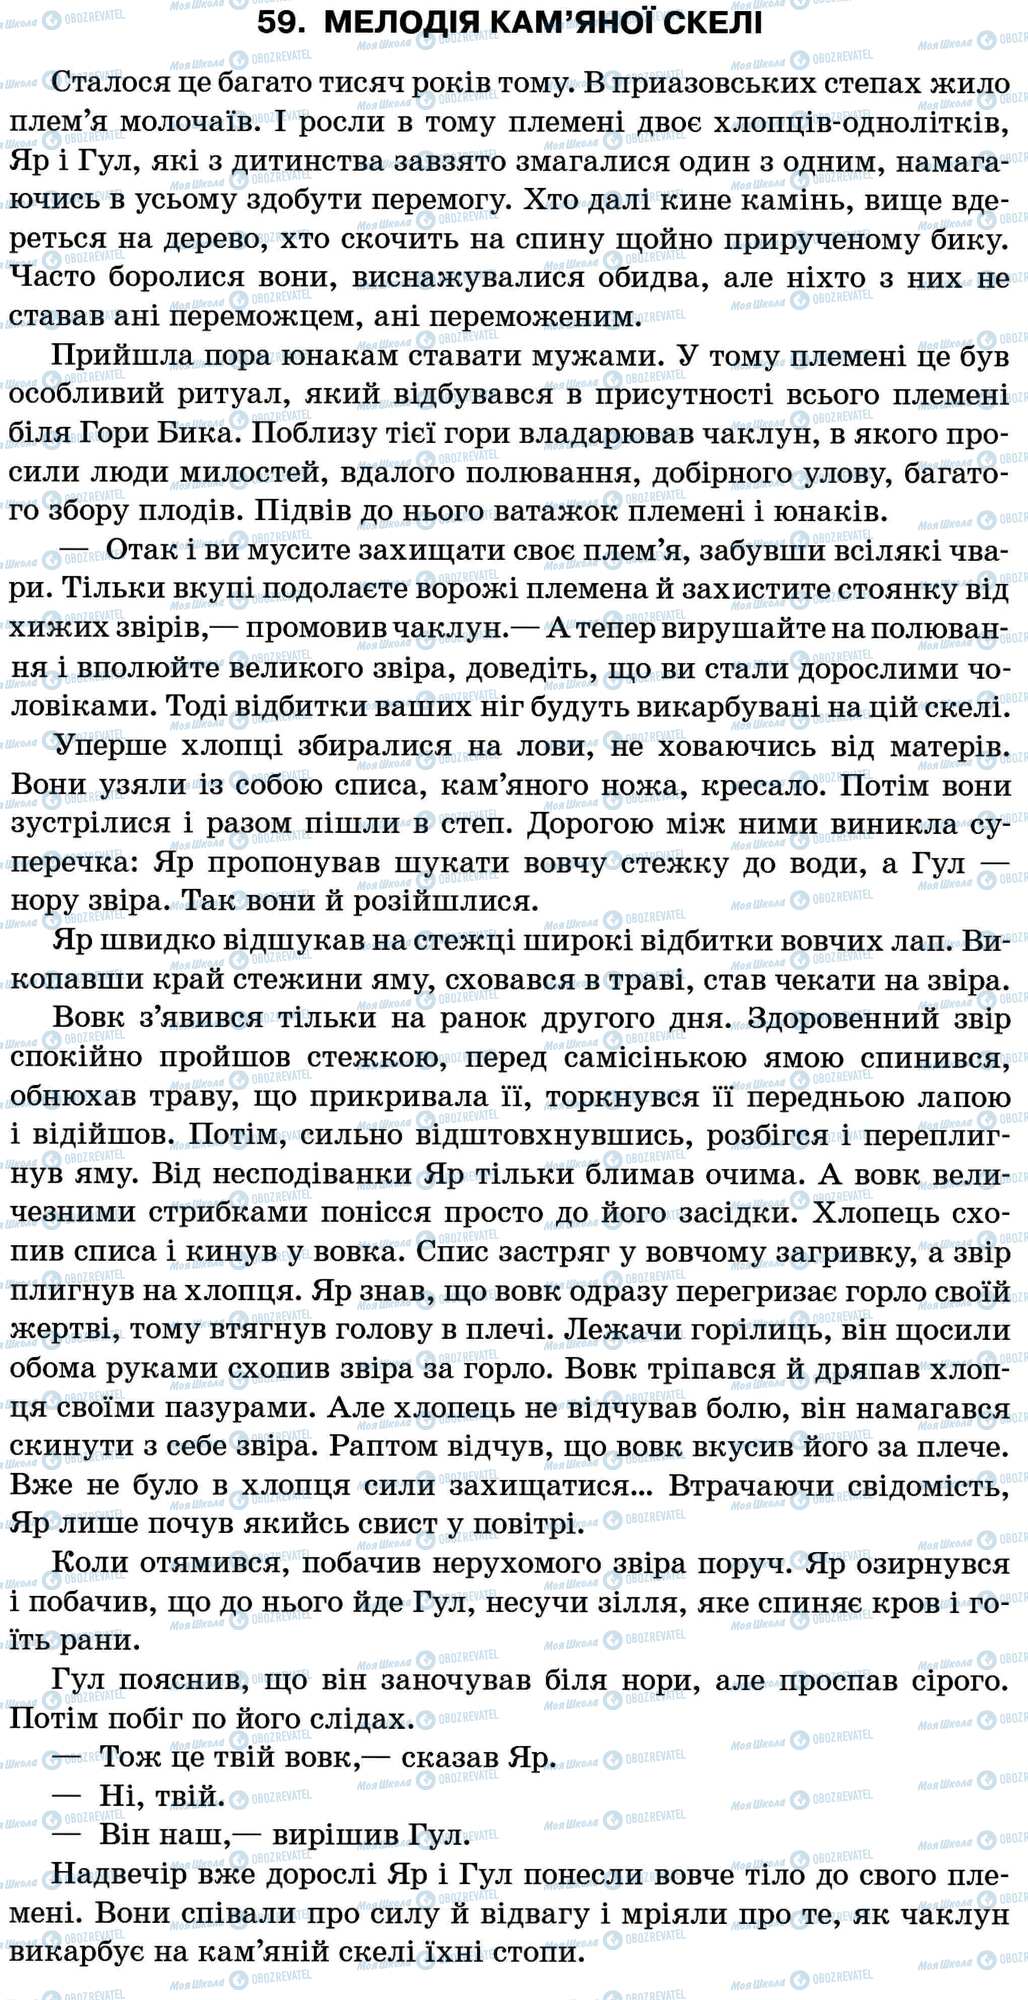 ДПА Укр мова 11 класс страница 59. Мелодія кам’яної скелі